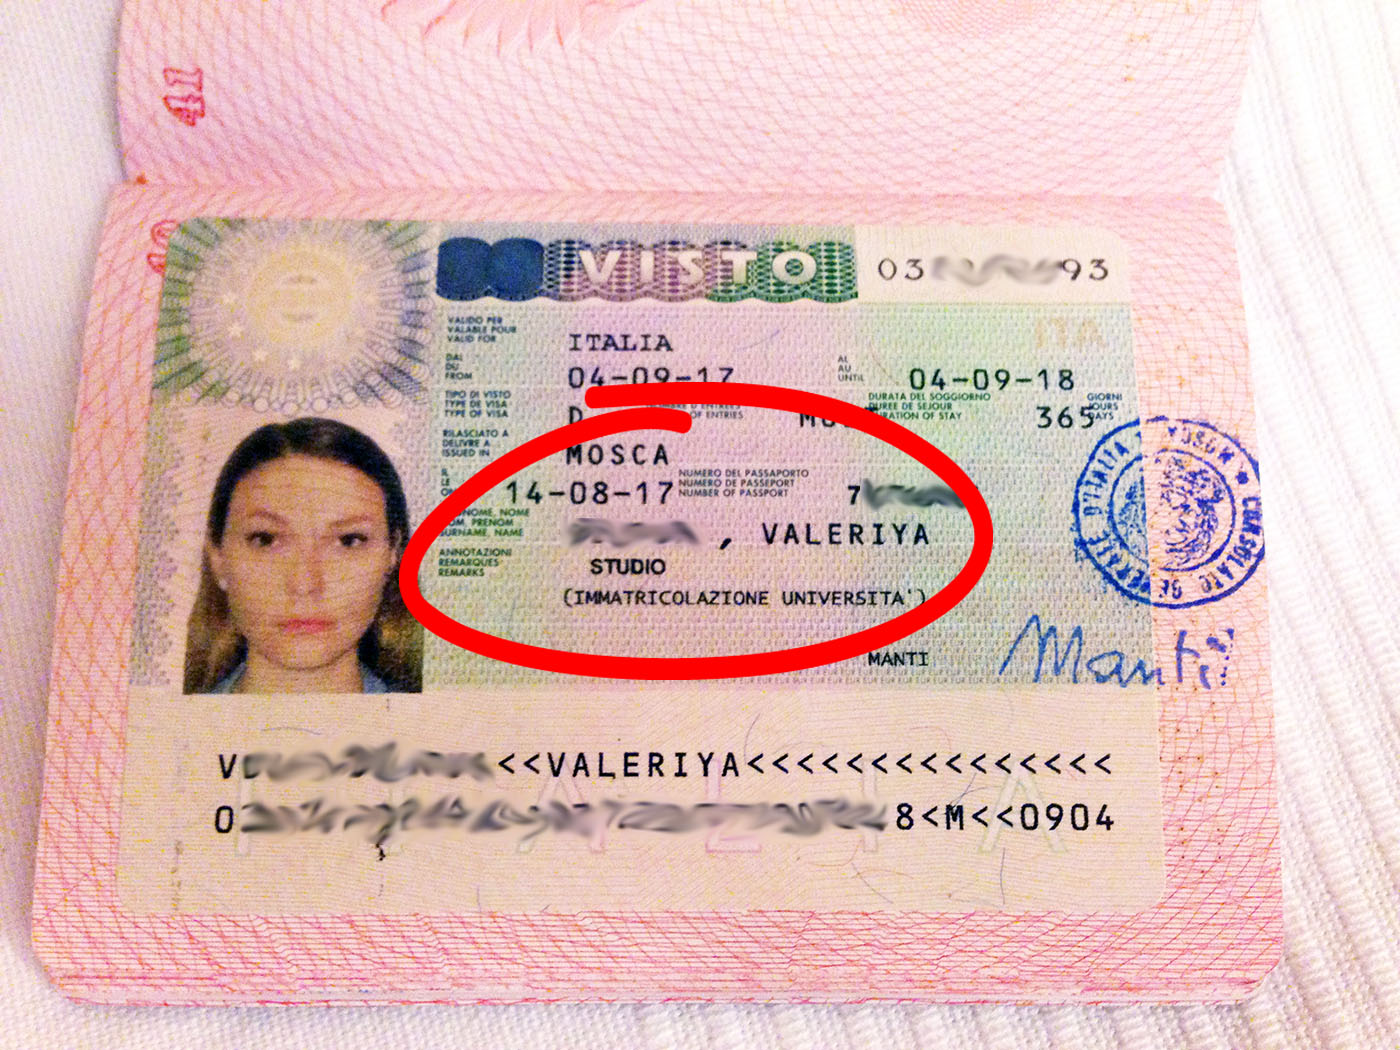 Как получить студенческую визу в чехию для россиян: документы, сроки, стоимость